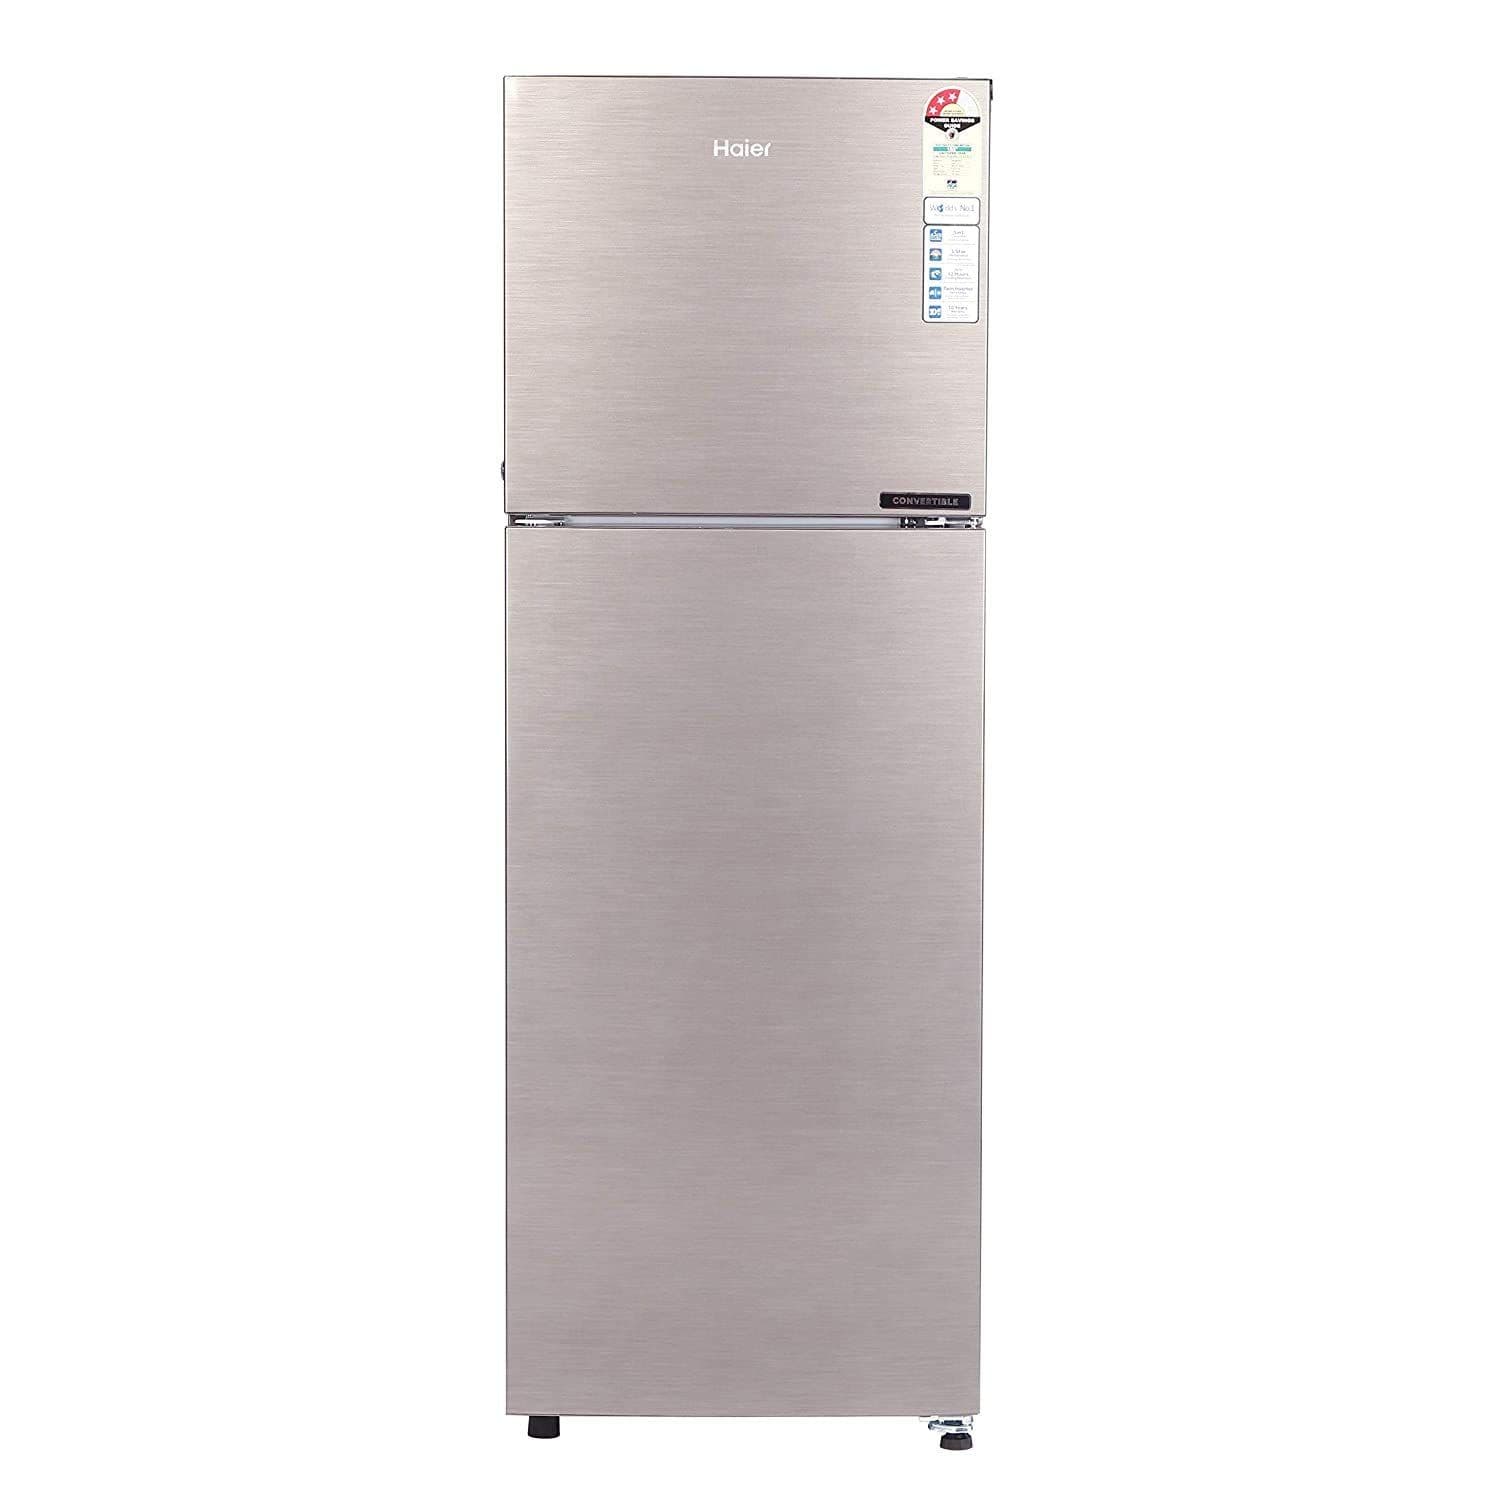 Haier HEB-25TDS 258 Ltr Double Door Refrigerator